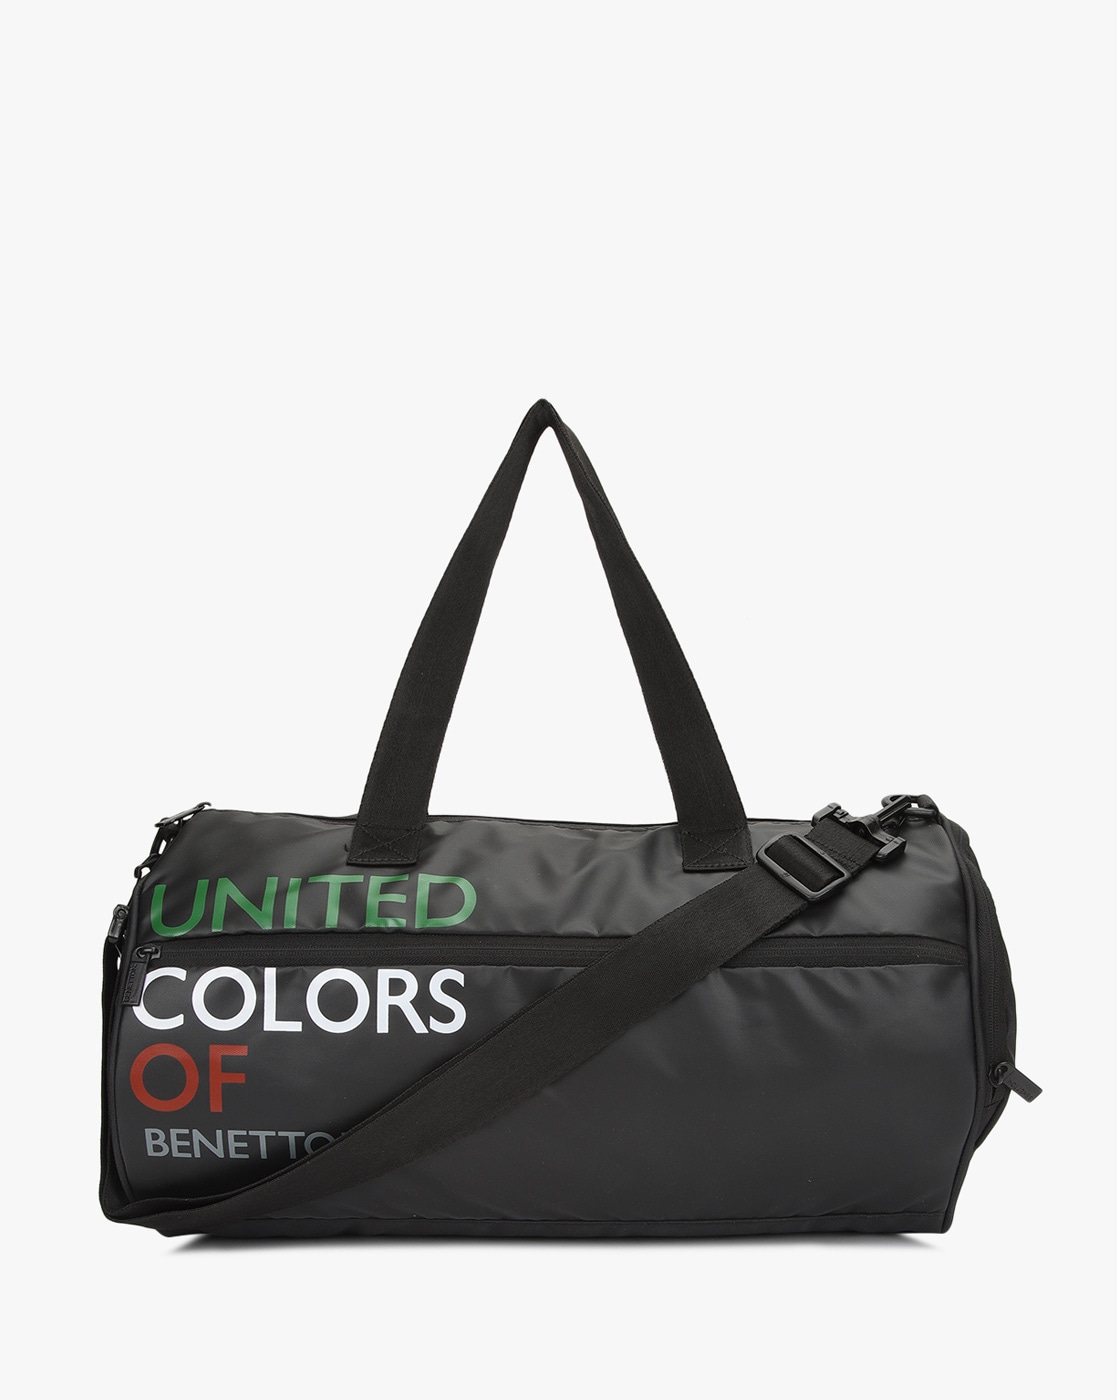 Discover more than 161 benetton gym bag - 3tdesign.edu.vn